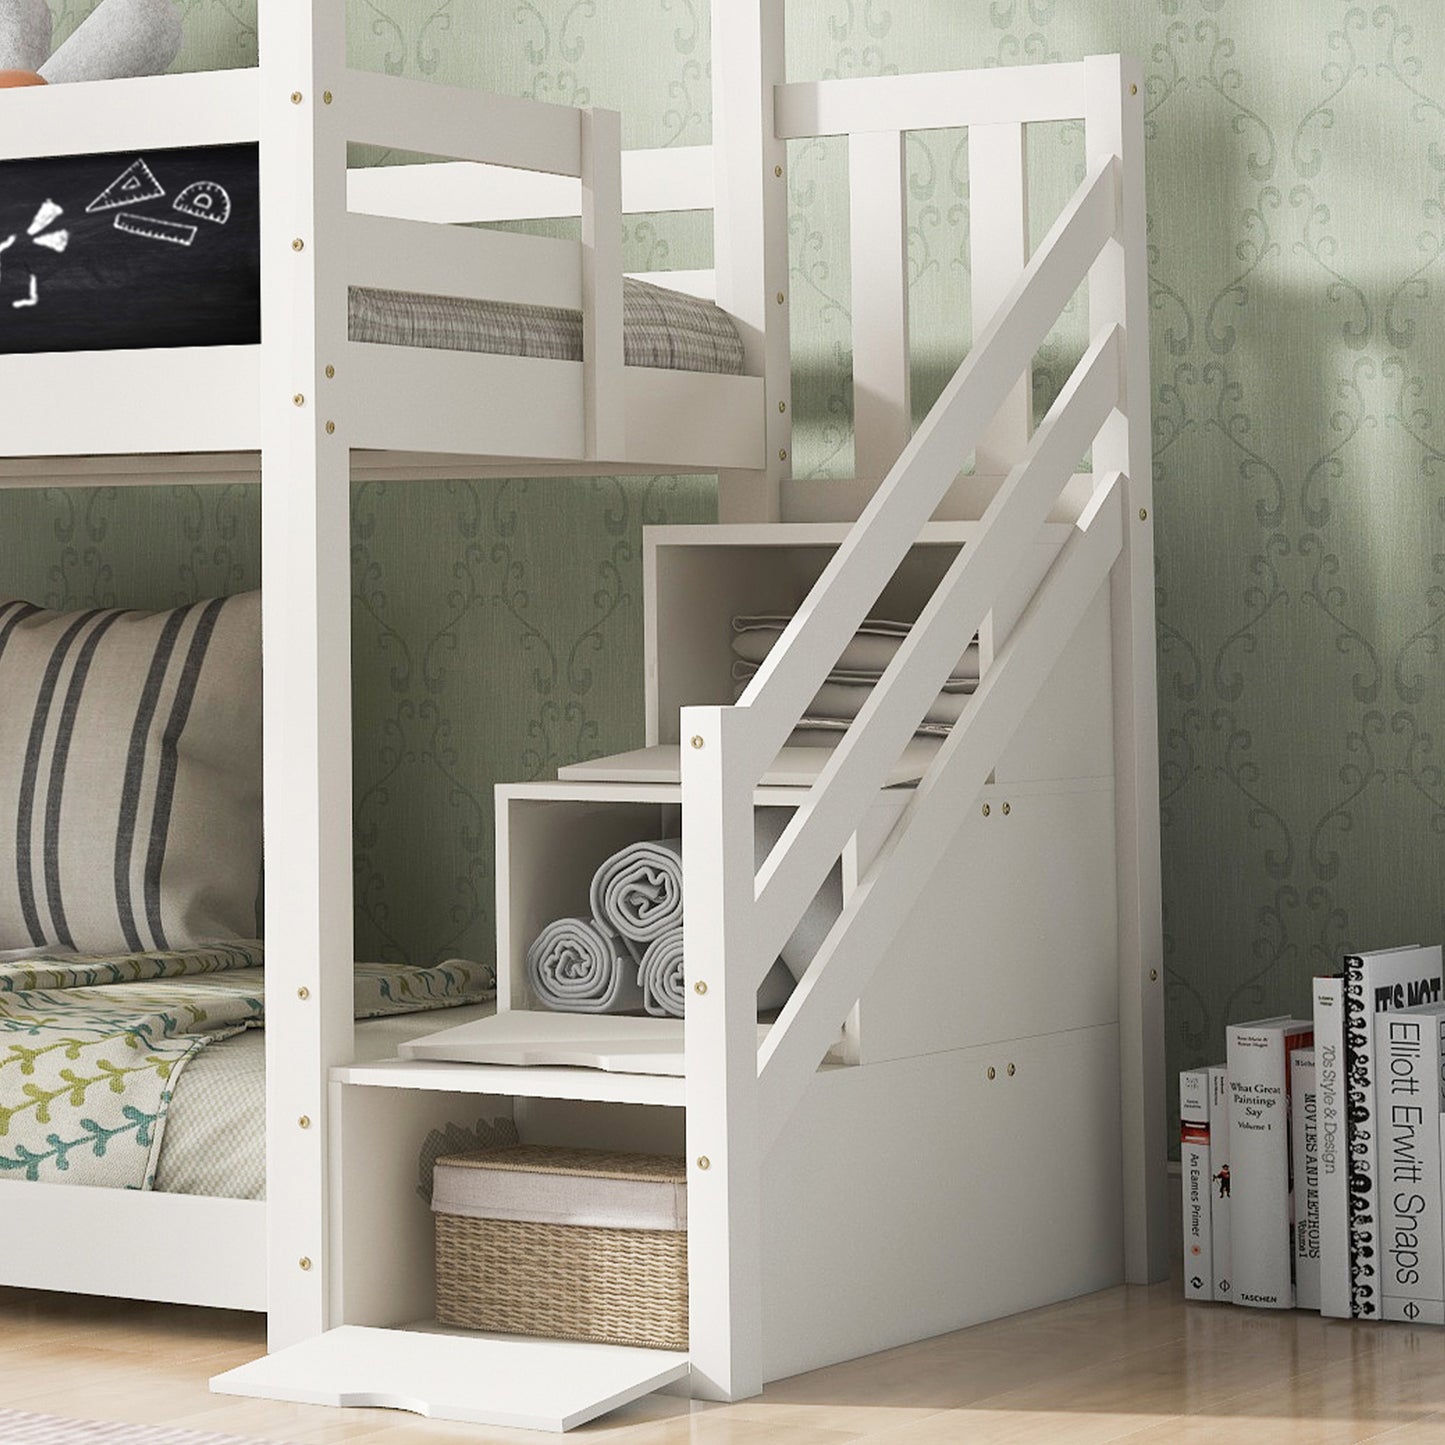 Barnsäng,Säng90 x 200 cm, loftbädd för barn inklusive tabell- 2x Slamated Framevit (utan madrass)